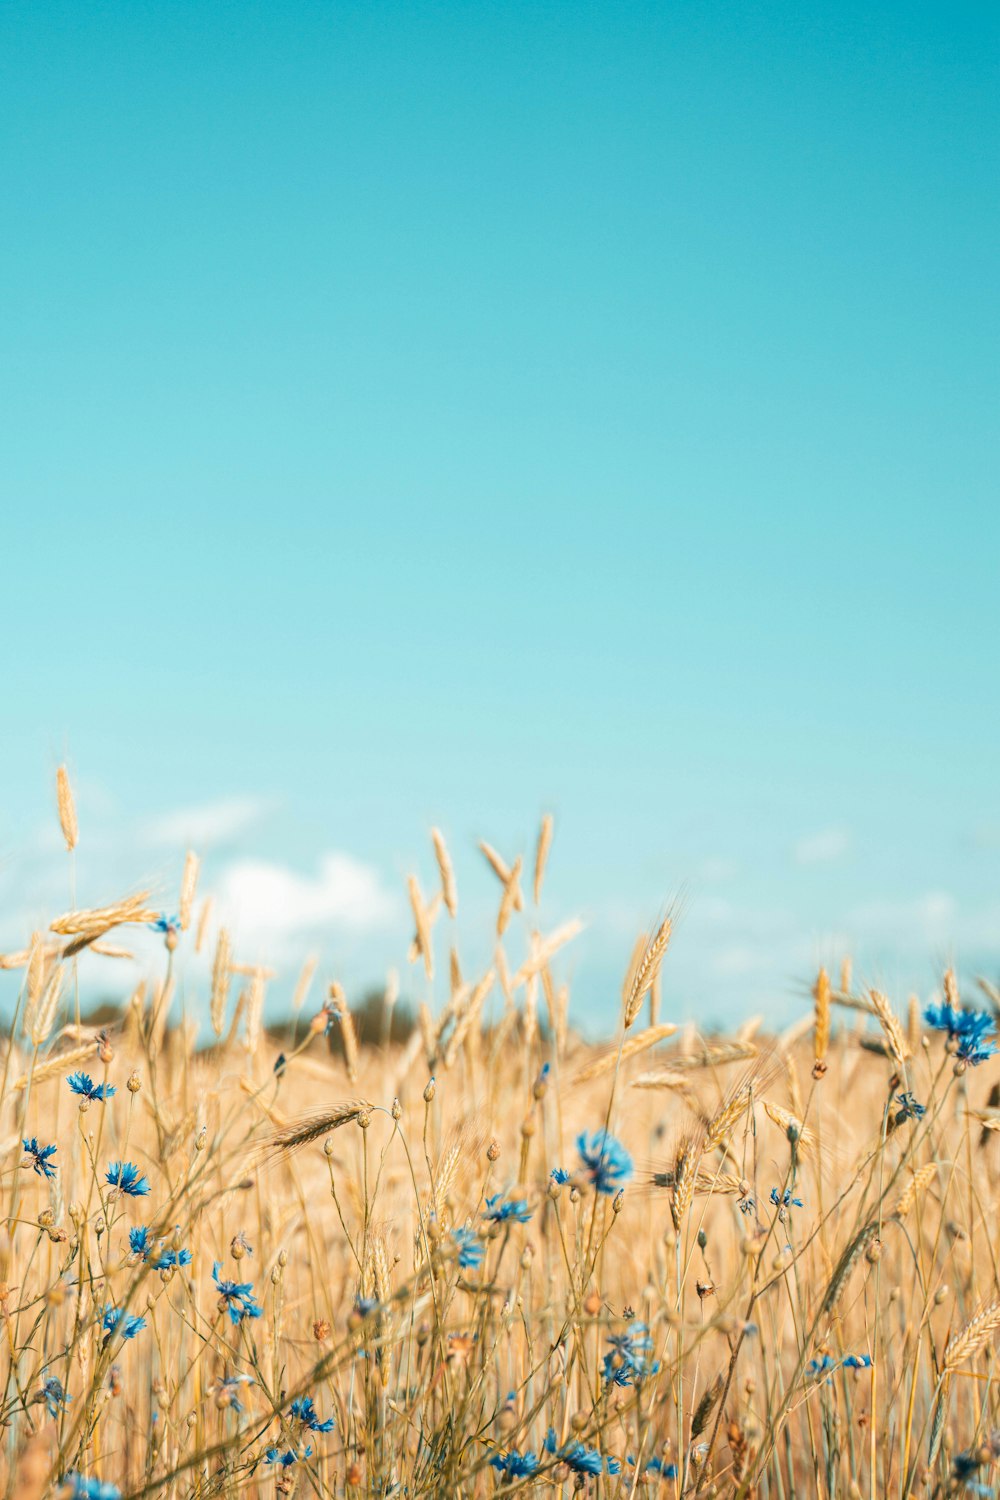 푸른 하늘을 배경으로 한 푸른 꽃밭